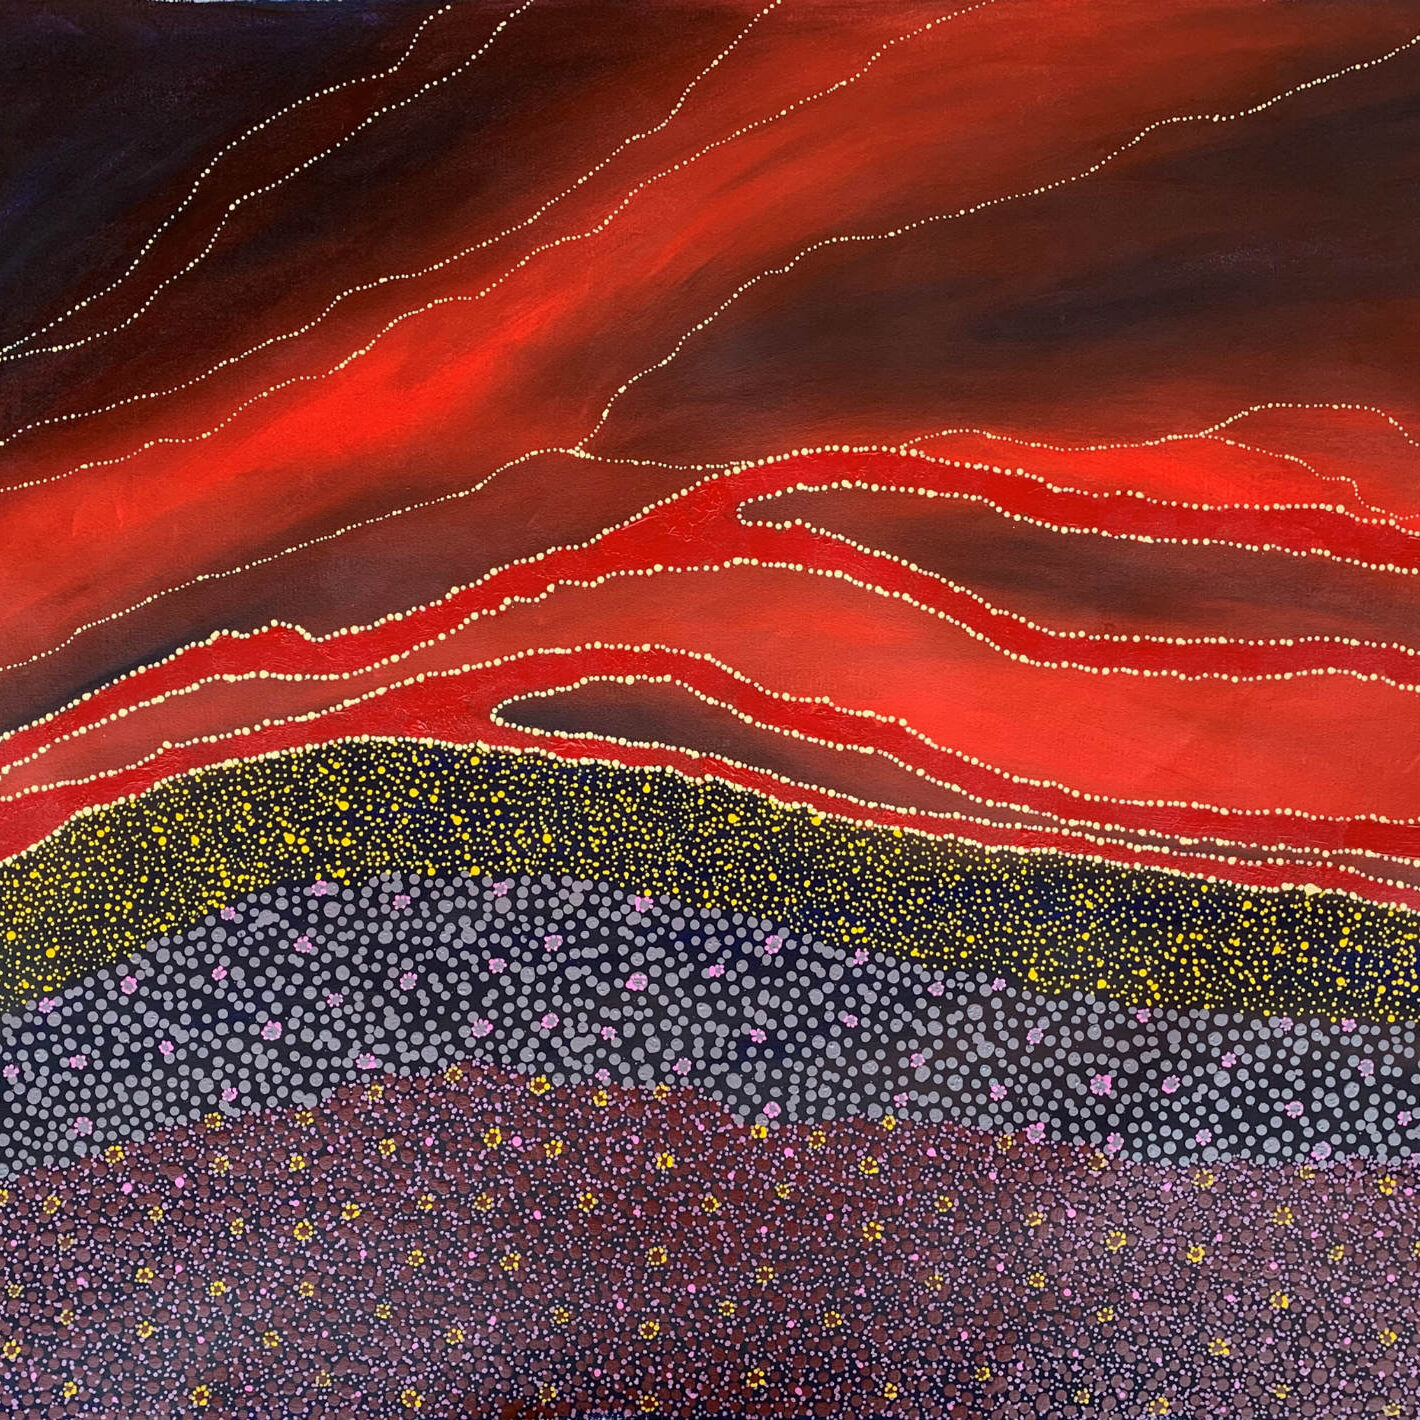 The painting, Bushfire, by Sonya Edney